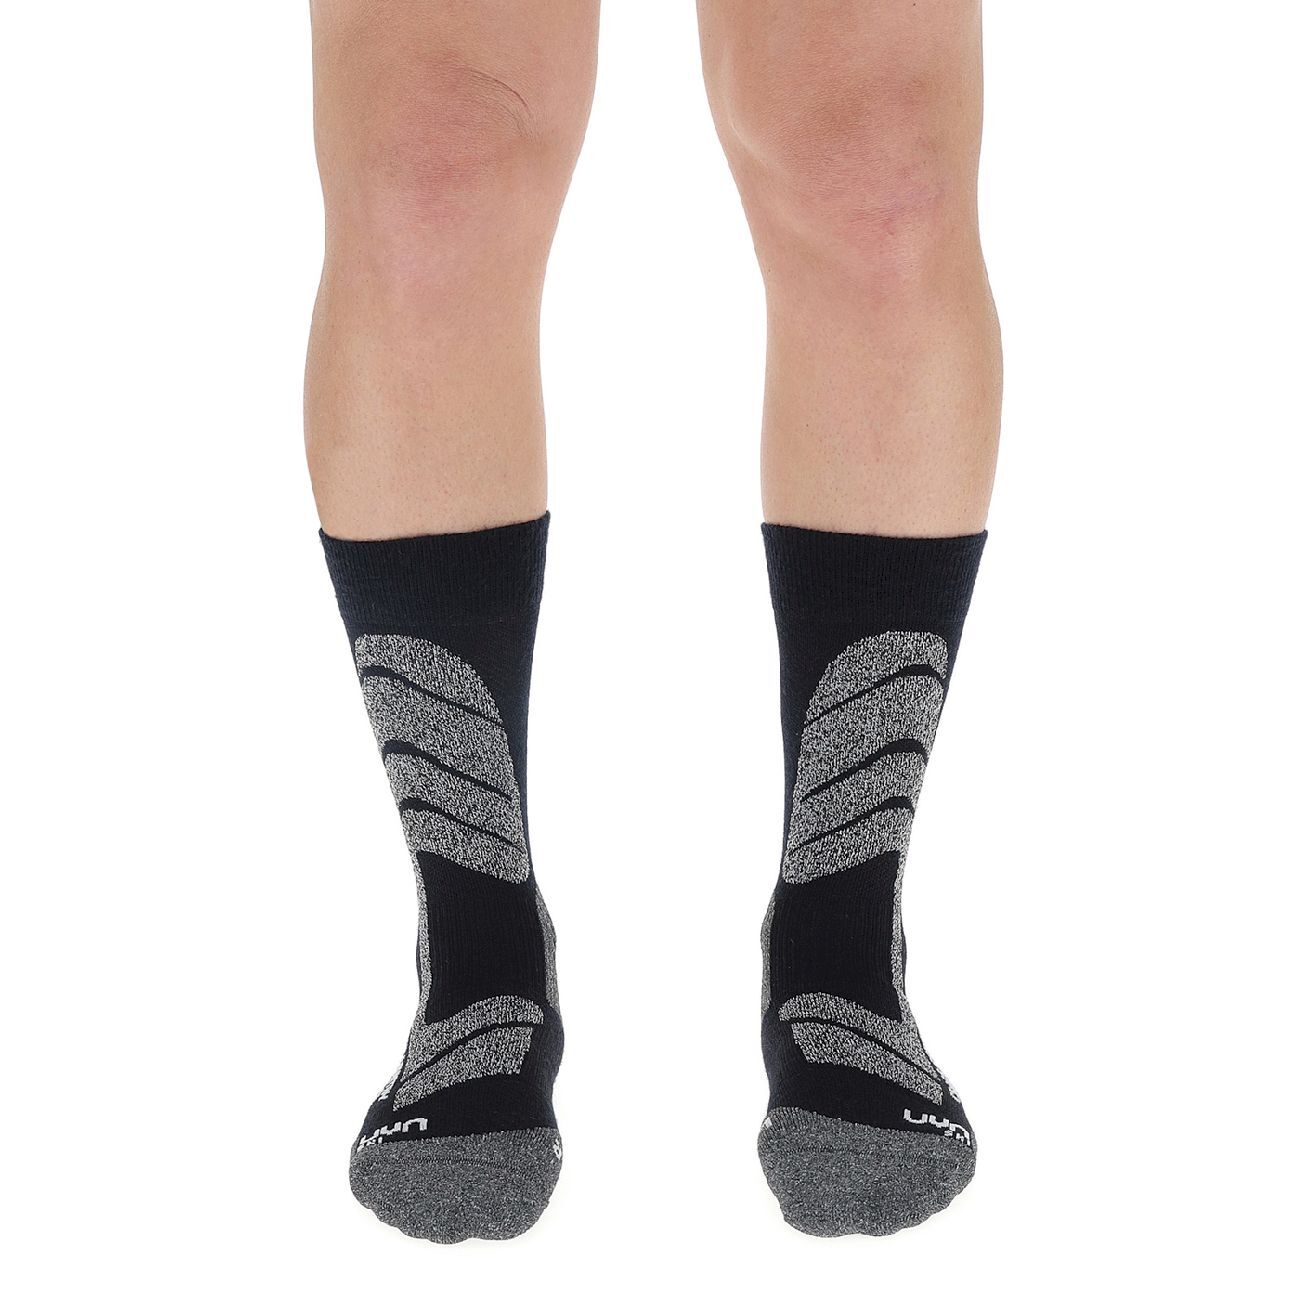 Uyn Ski Cross Country Socks - Chaussettes ski homme